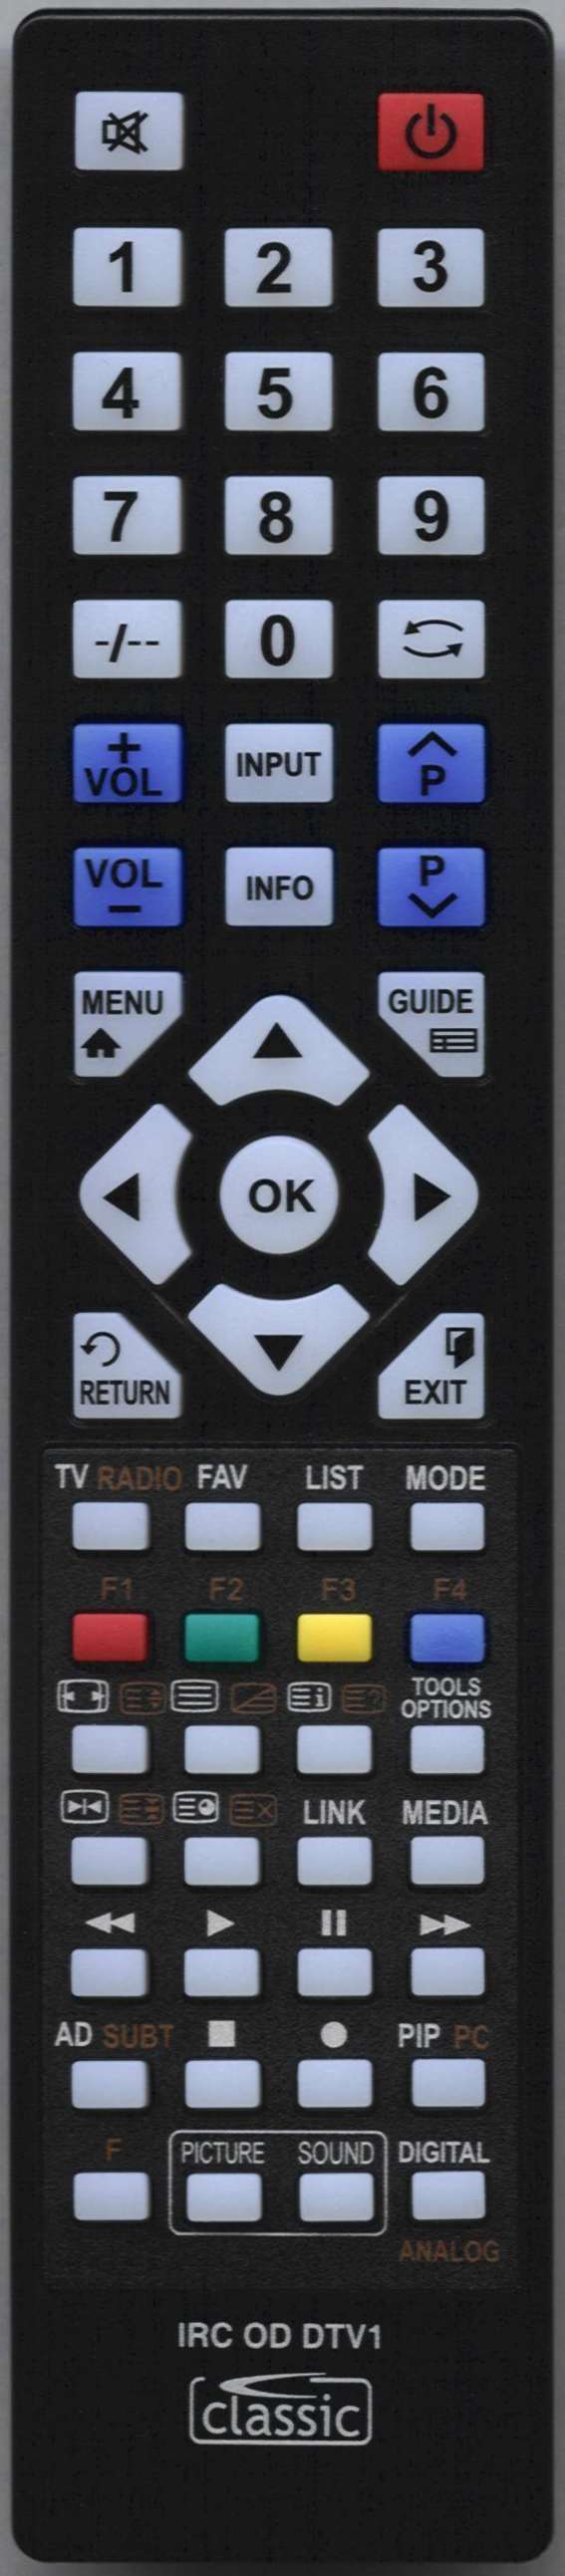 MATSUI TVR 185OB Remote Control